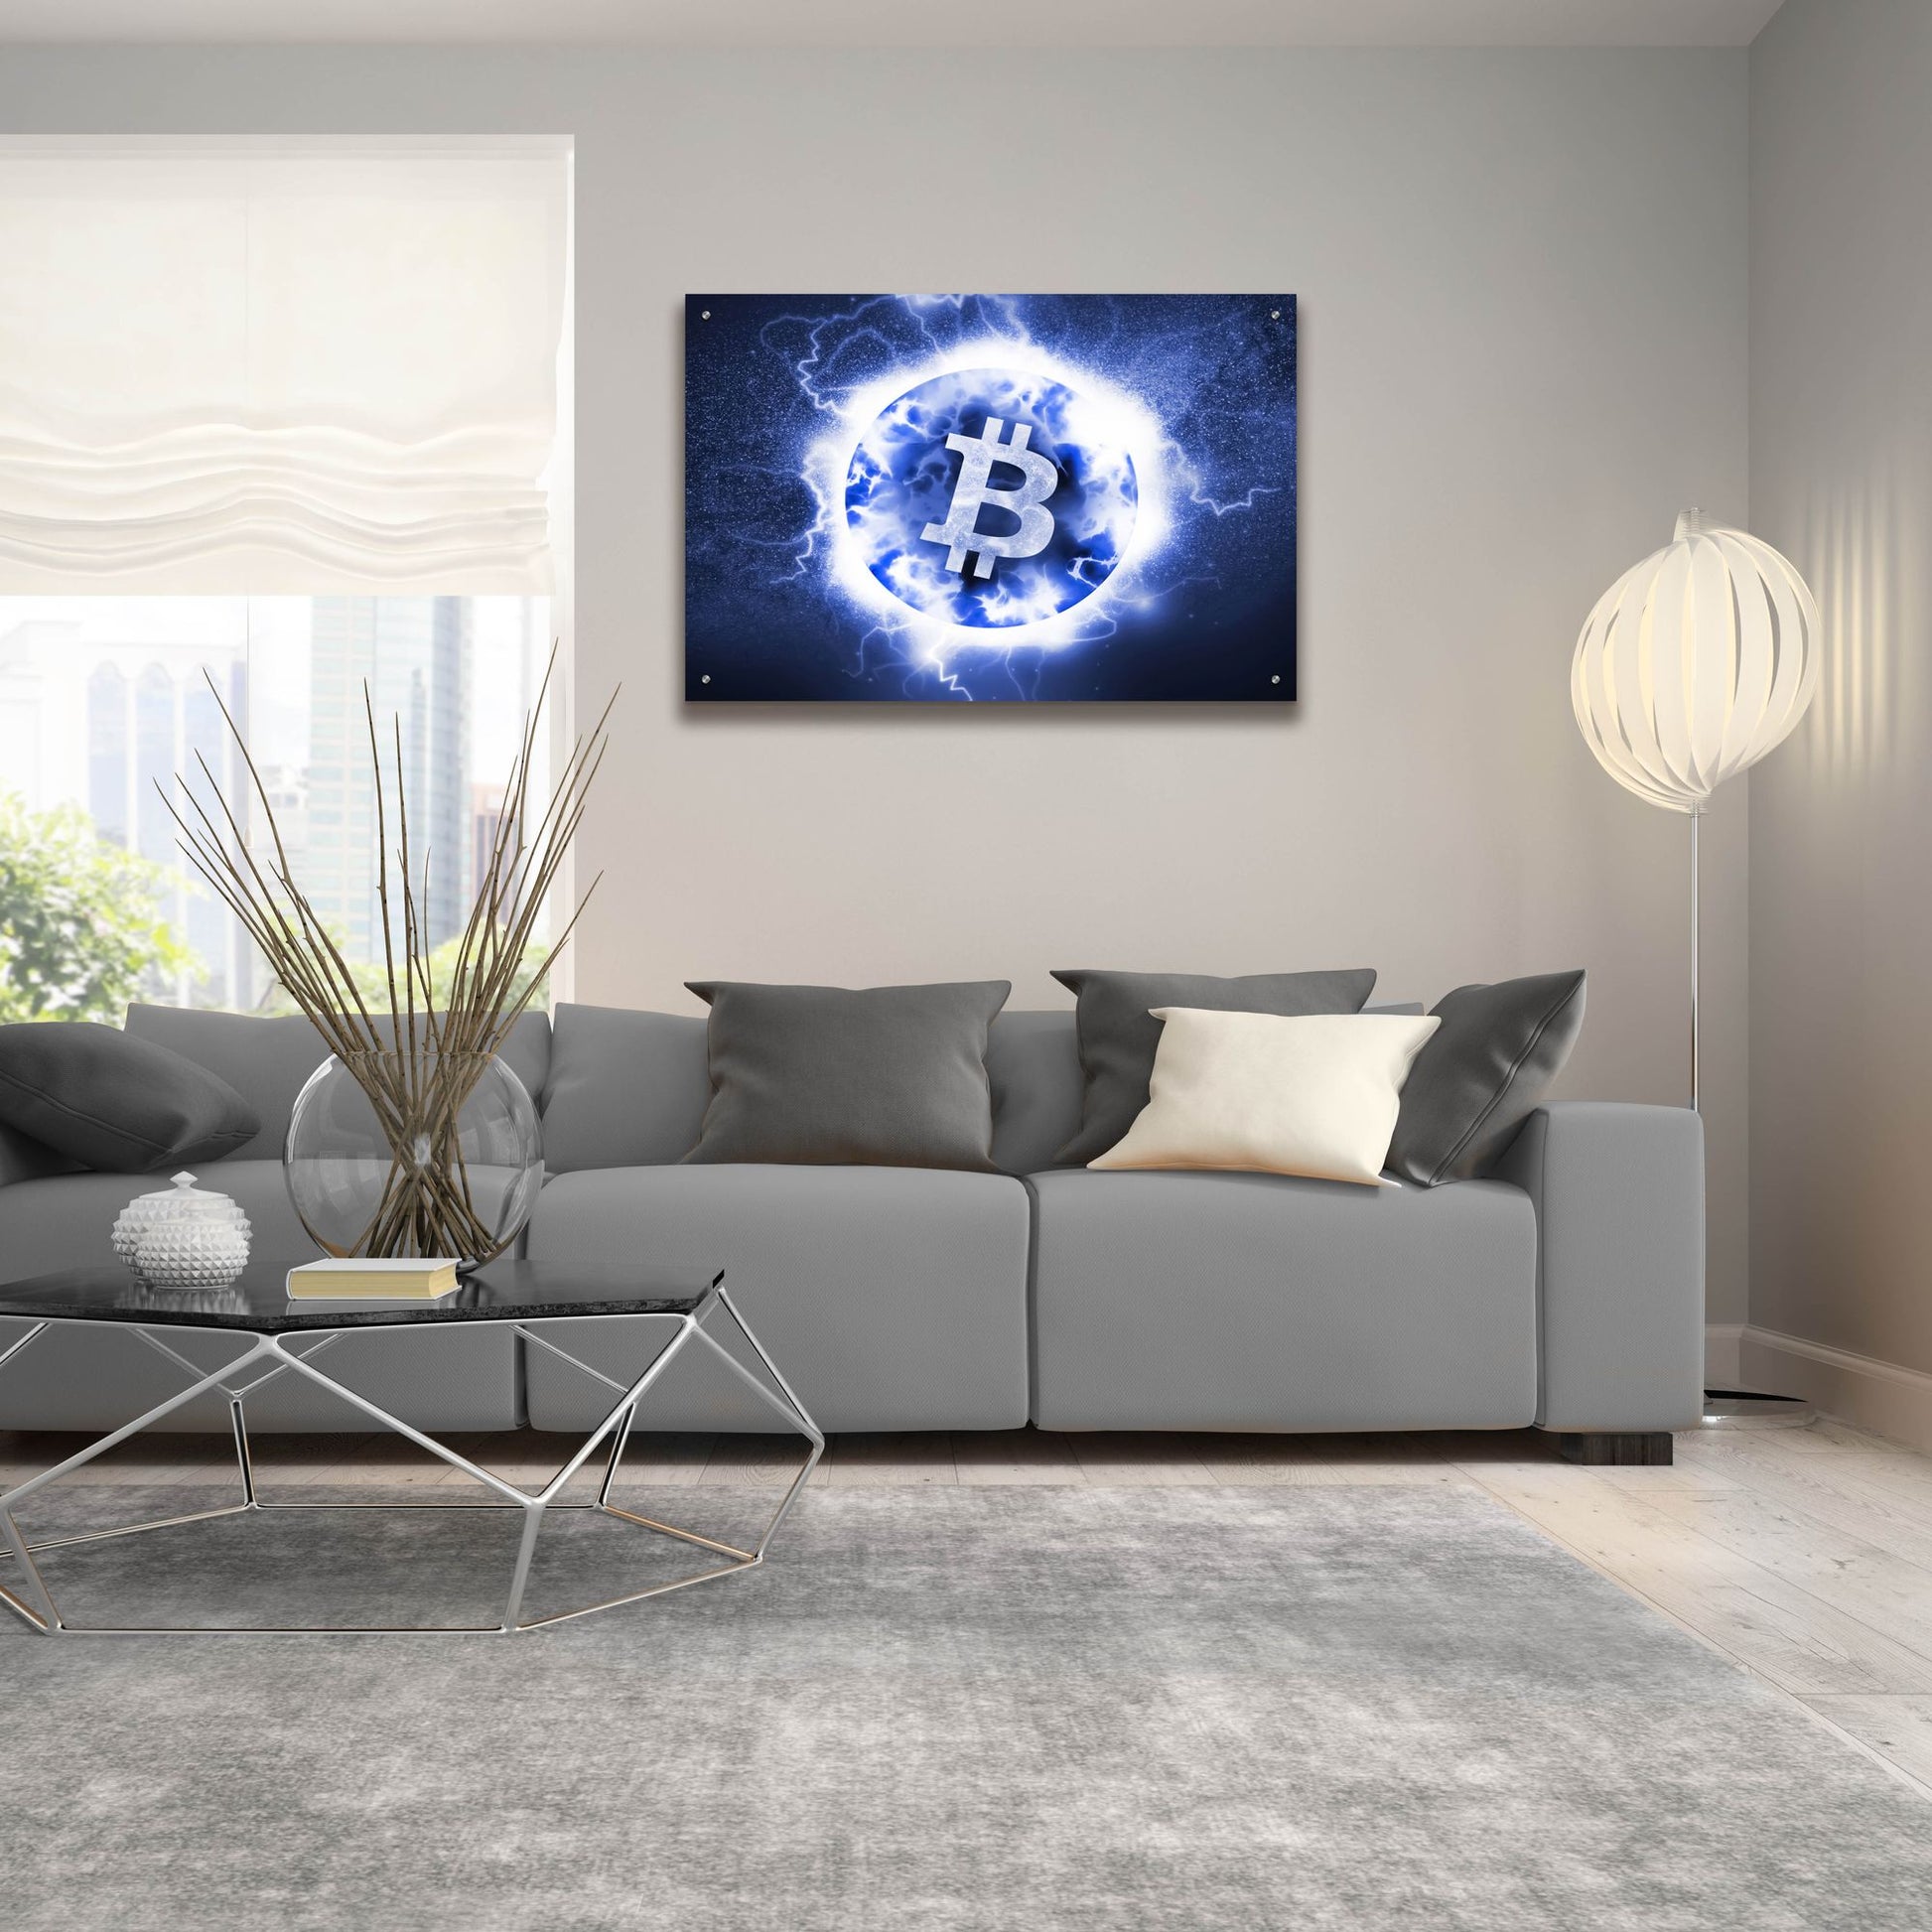 Epic Art 'Crypto Eclipse Bitcoin Btc' by Epic Portfolio, Acrylic Glass Wall Art,36x24